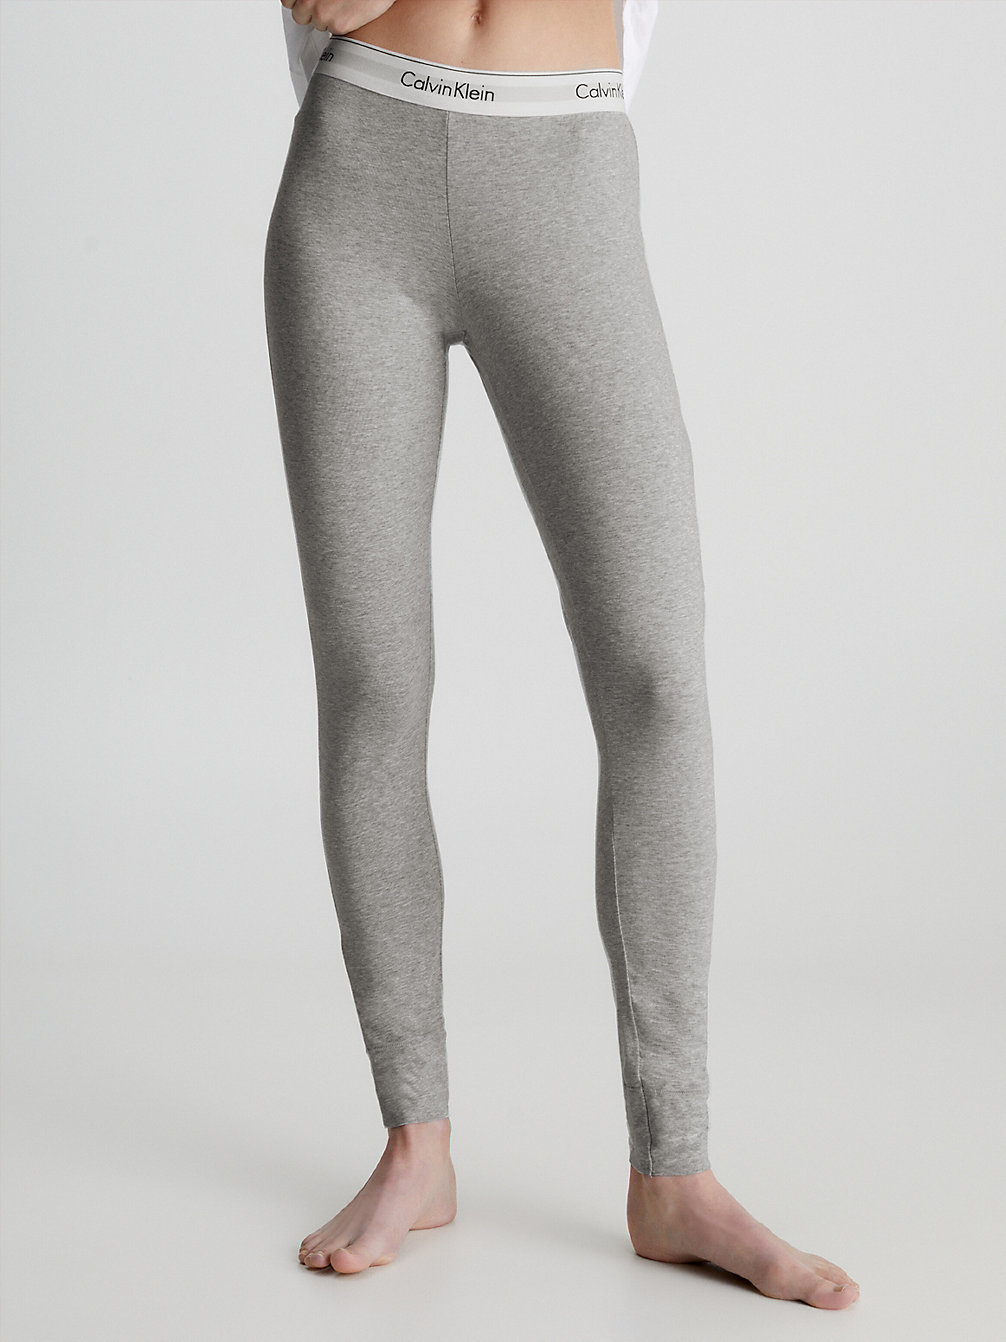 GREY HEATHER Legging Lounge - Modern Cotton undefined donna Calvin Klein